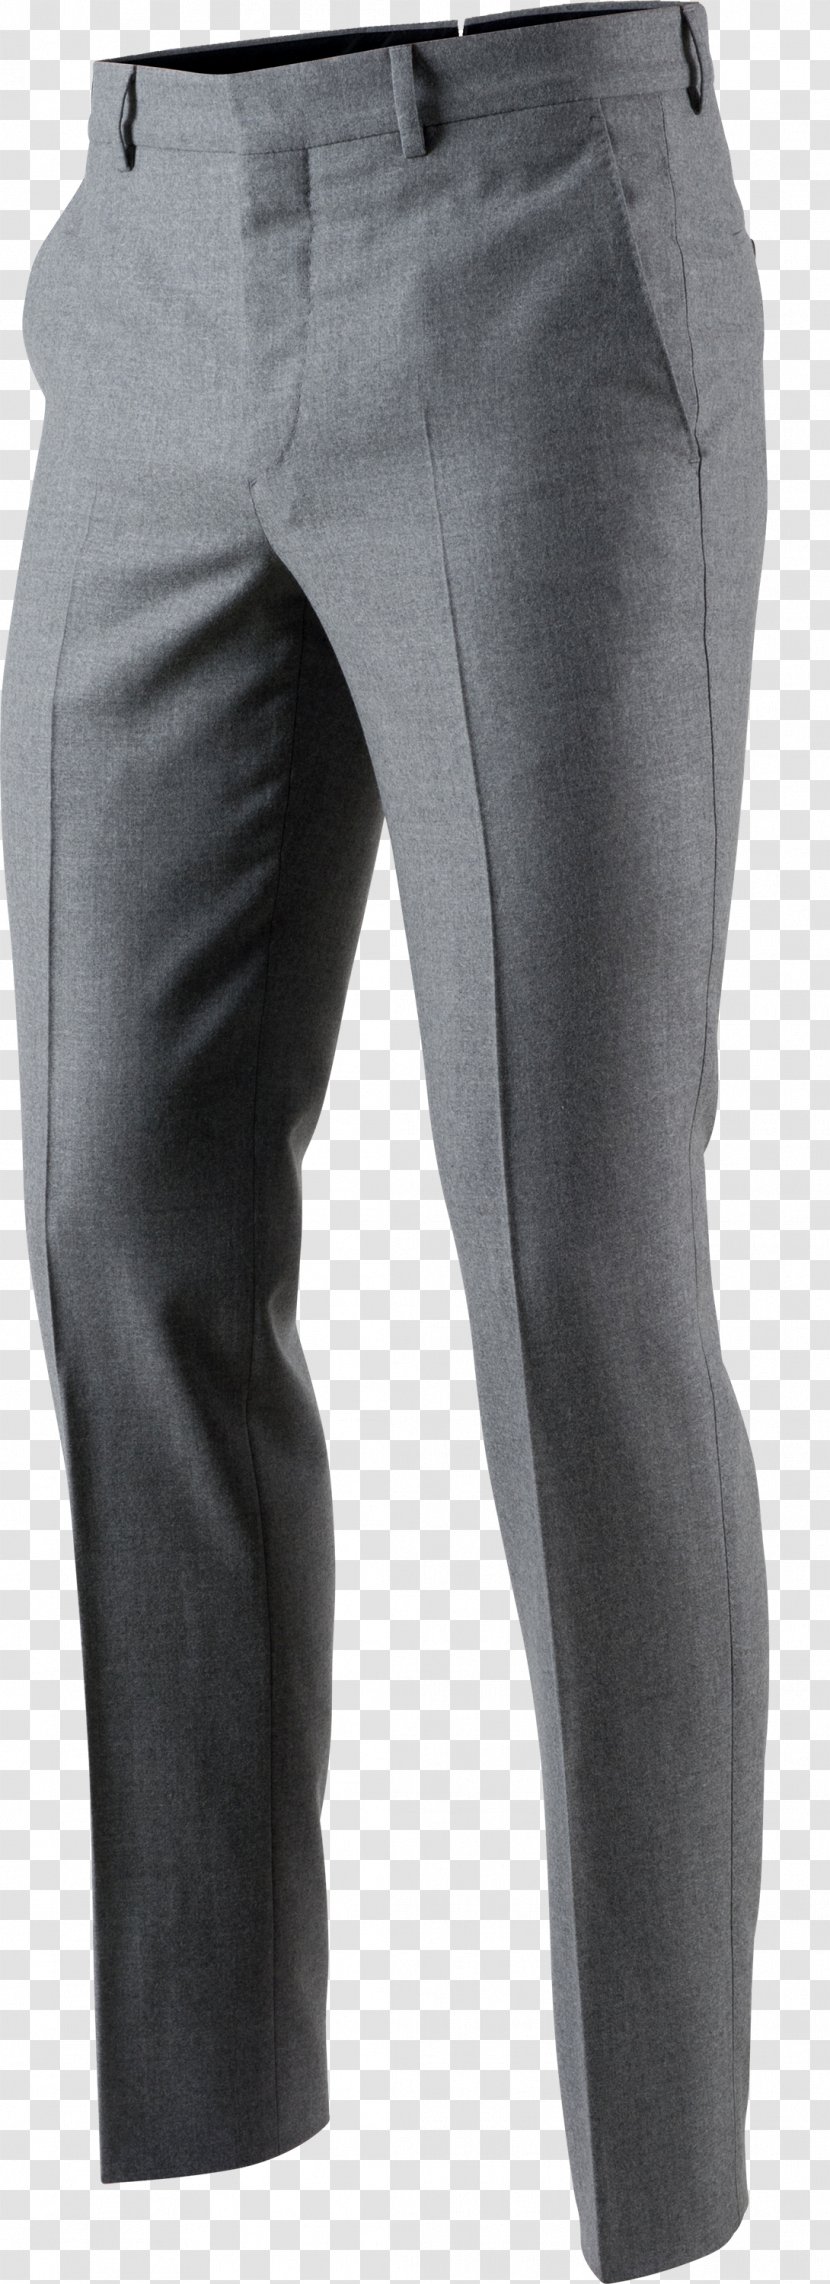 Jeans Denim Waist Pants Grey - Trousers Transparent PNG